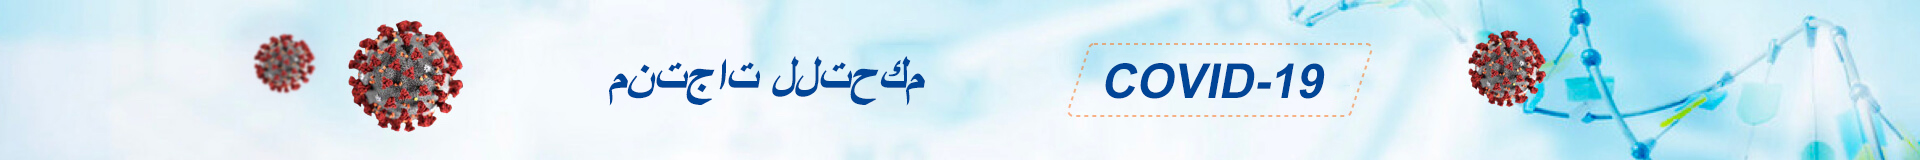 小banner阿拉伯